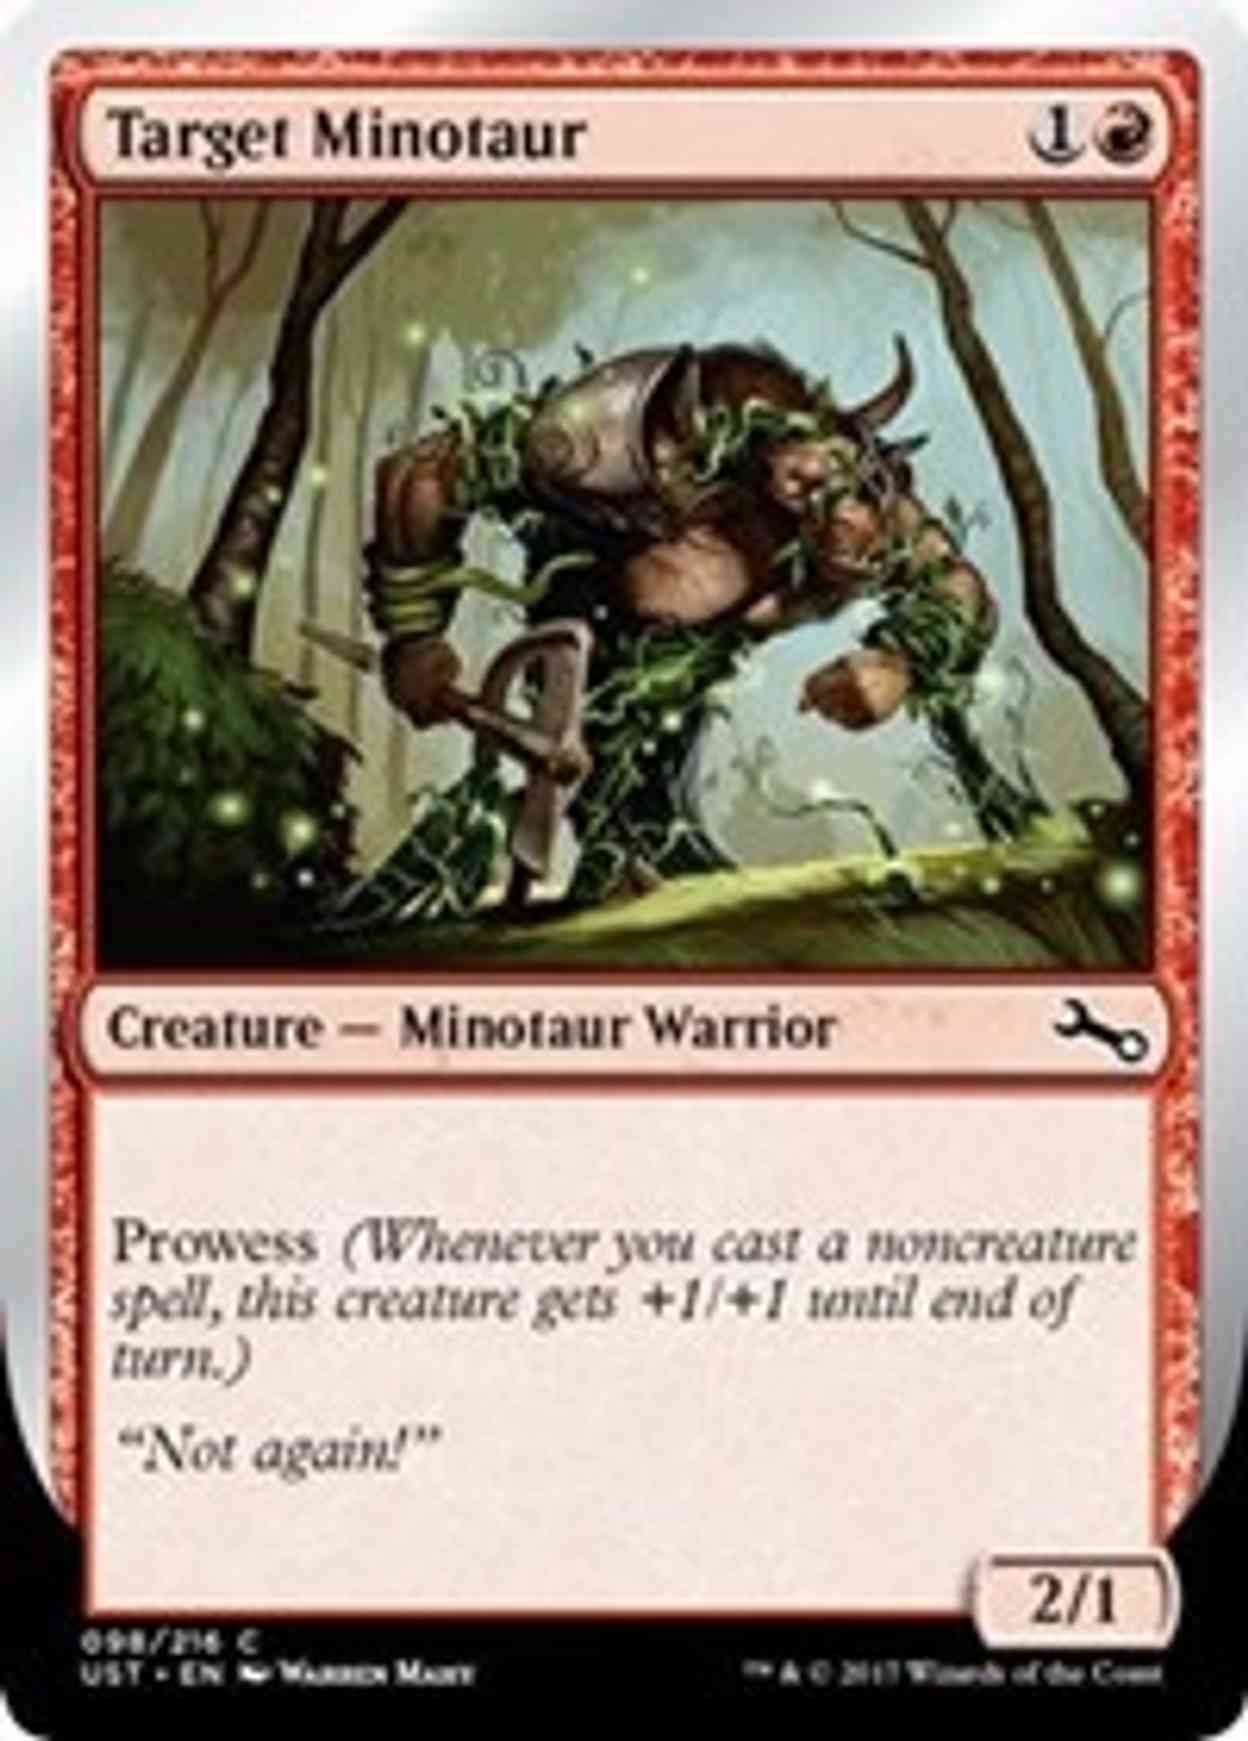 Target Minotaur (D) magic card front